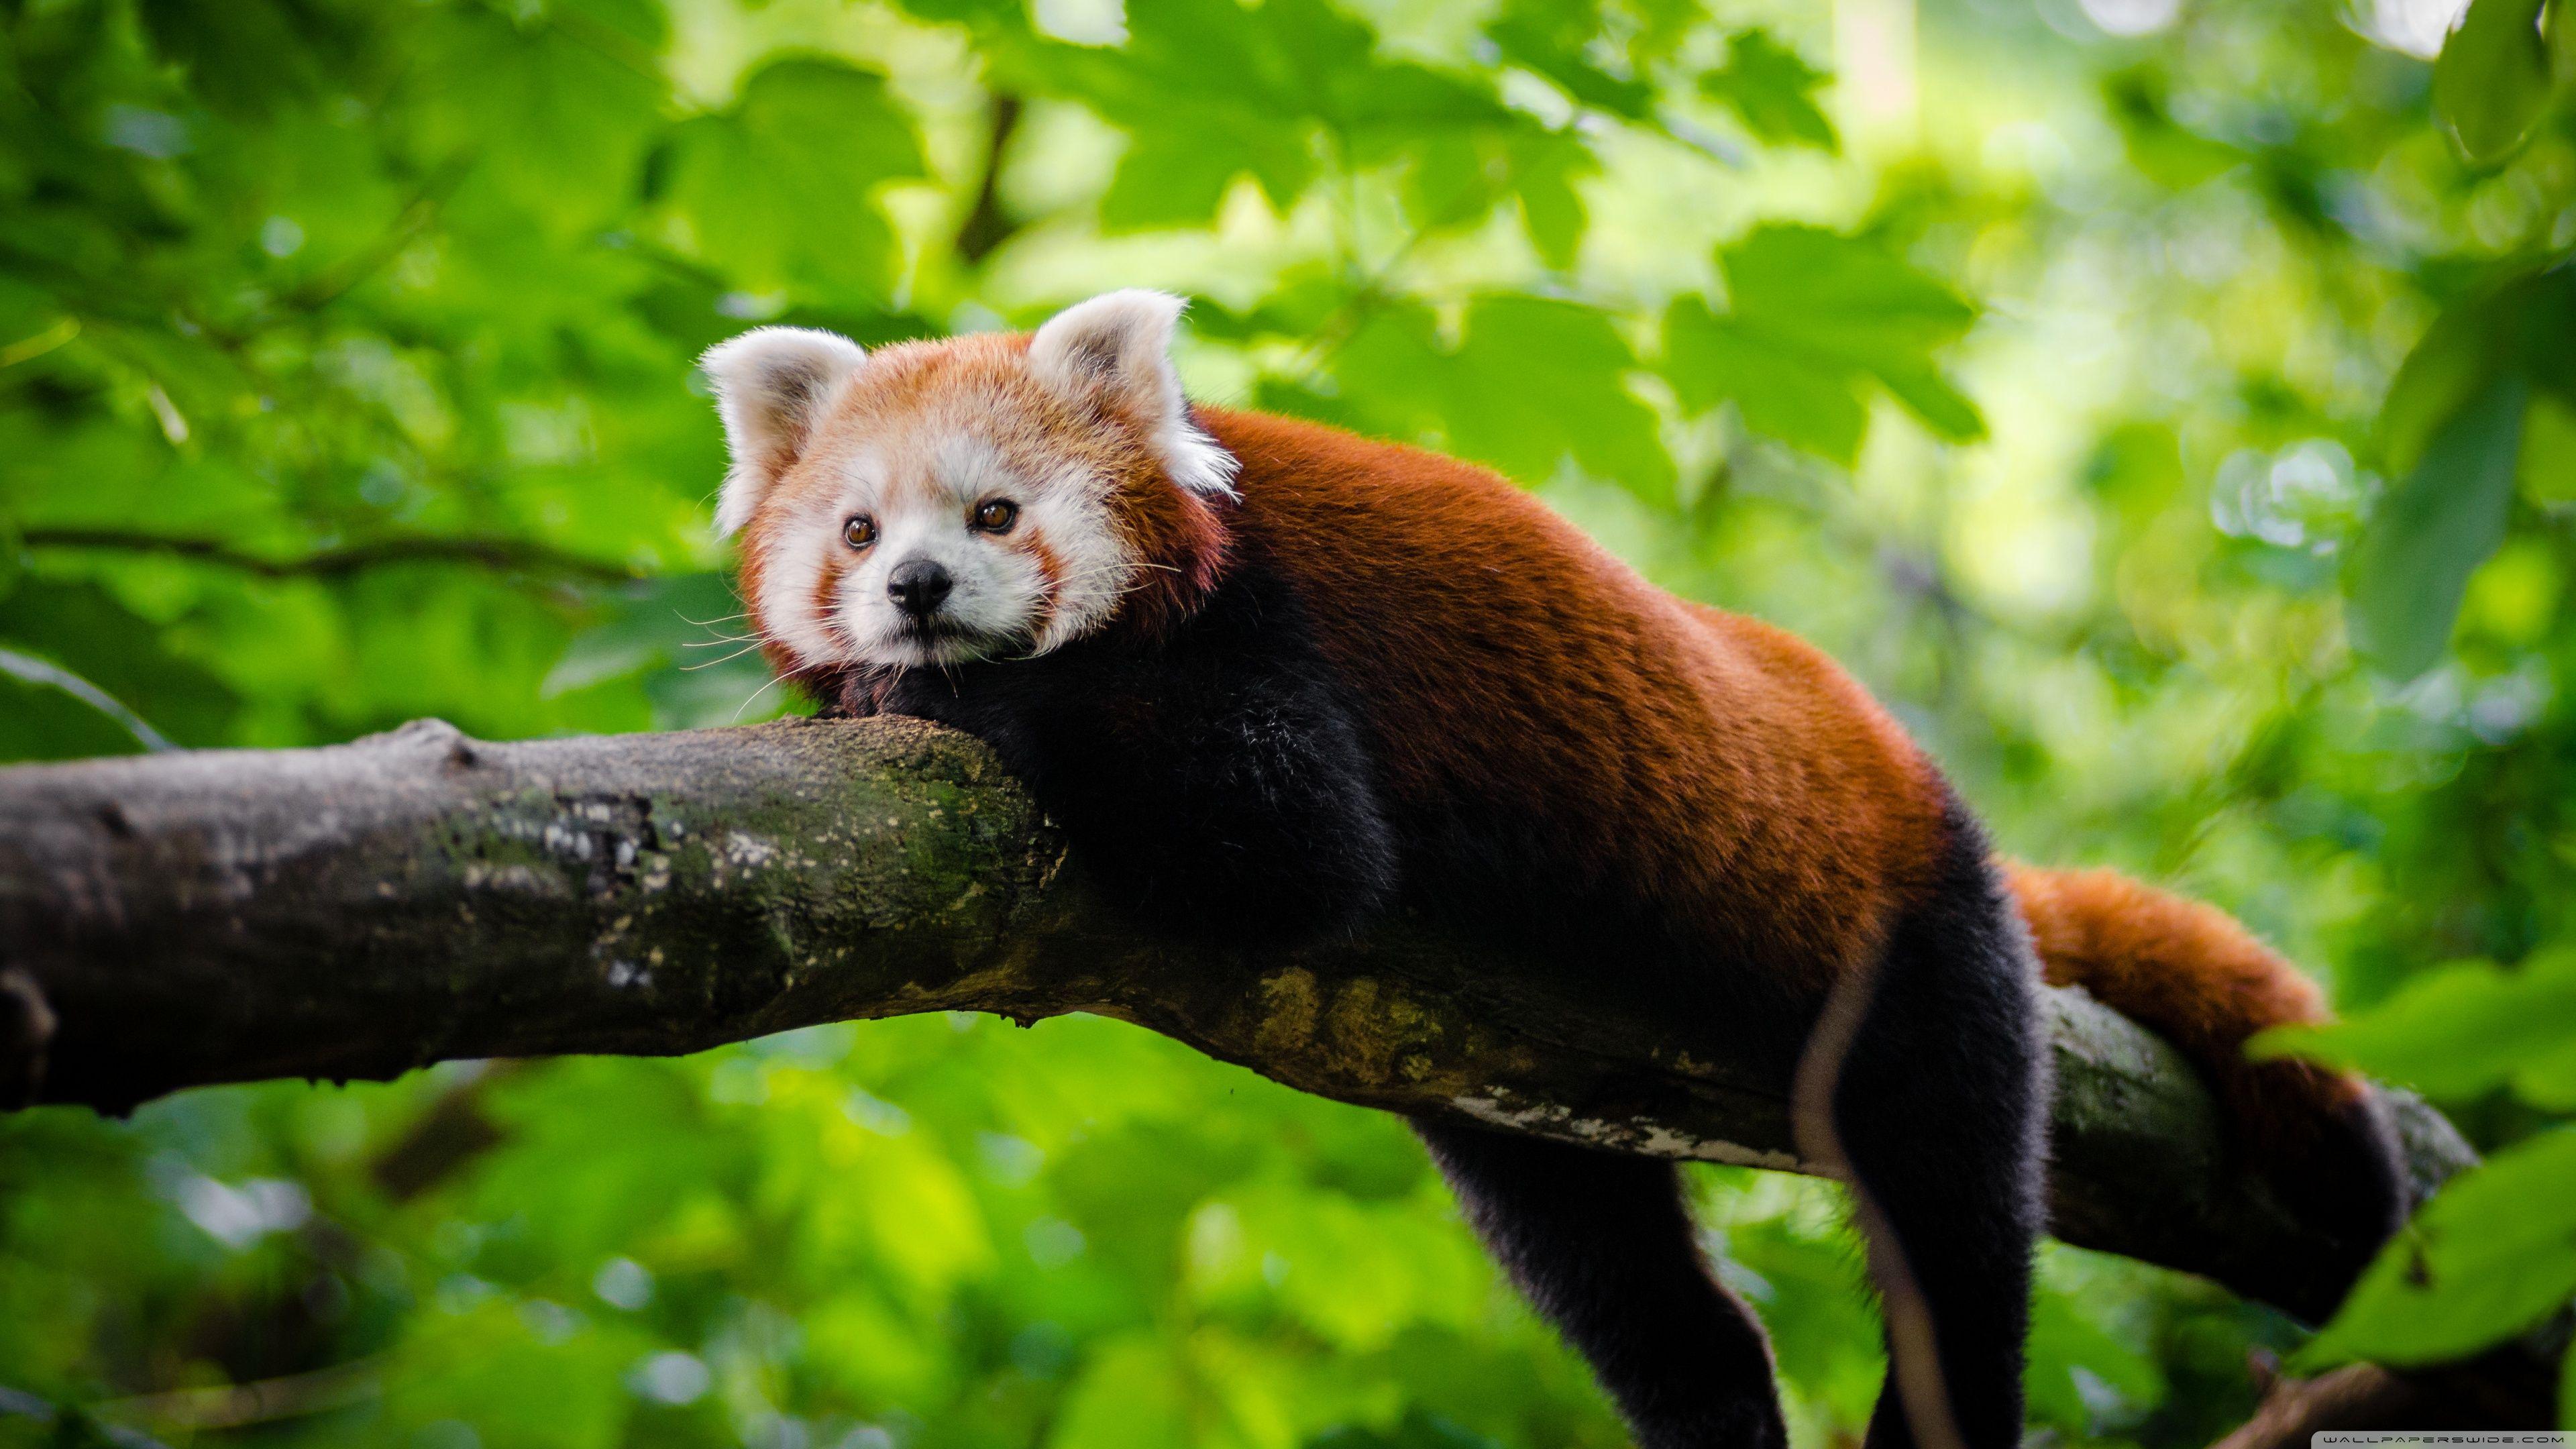 Cute Red Panda HD desktop wallpaper, Widescreen, High Definition